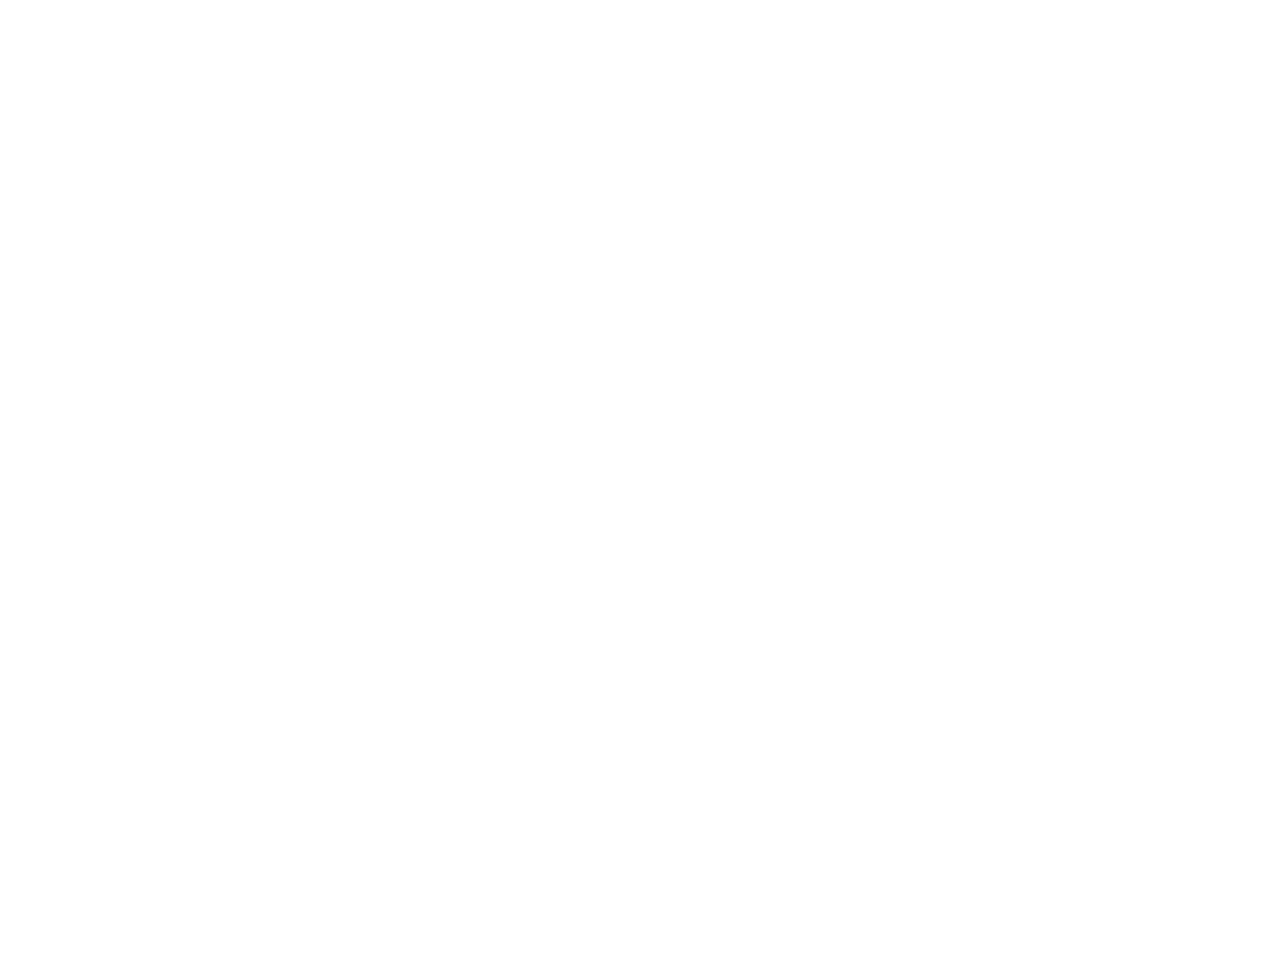 Верещагин В.В. Ствол сосны. Этюд. Холст, наклеенный на картон, масло. 26,5х34. Приморская государственная картинная галерея